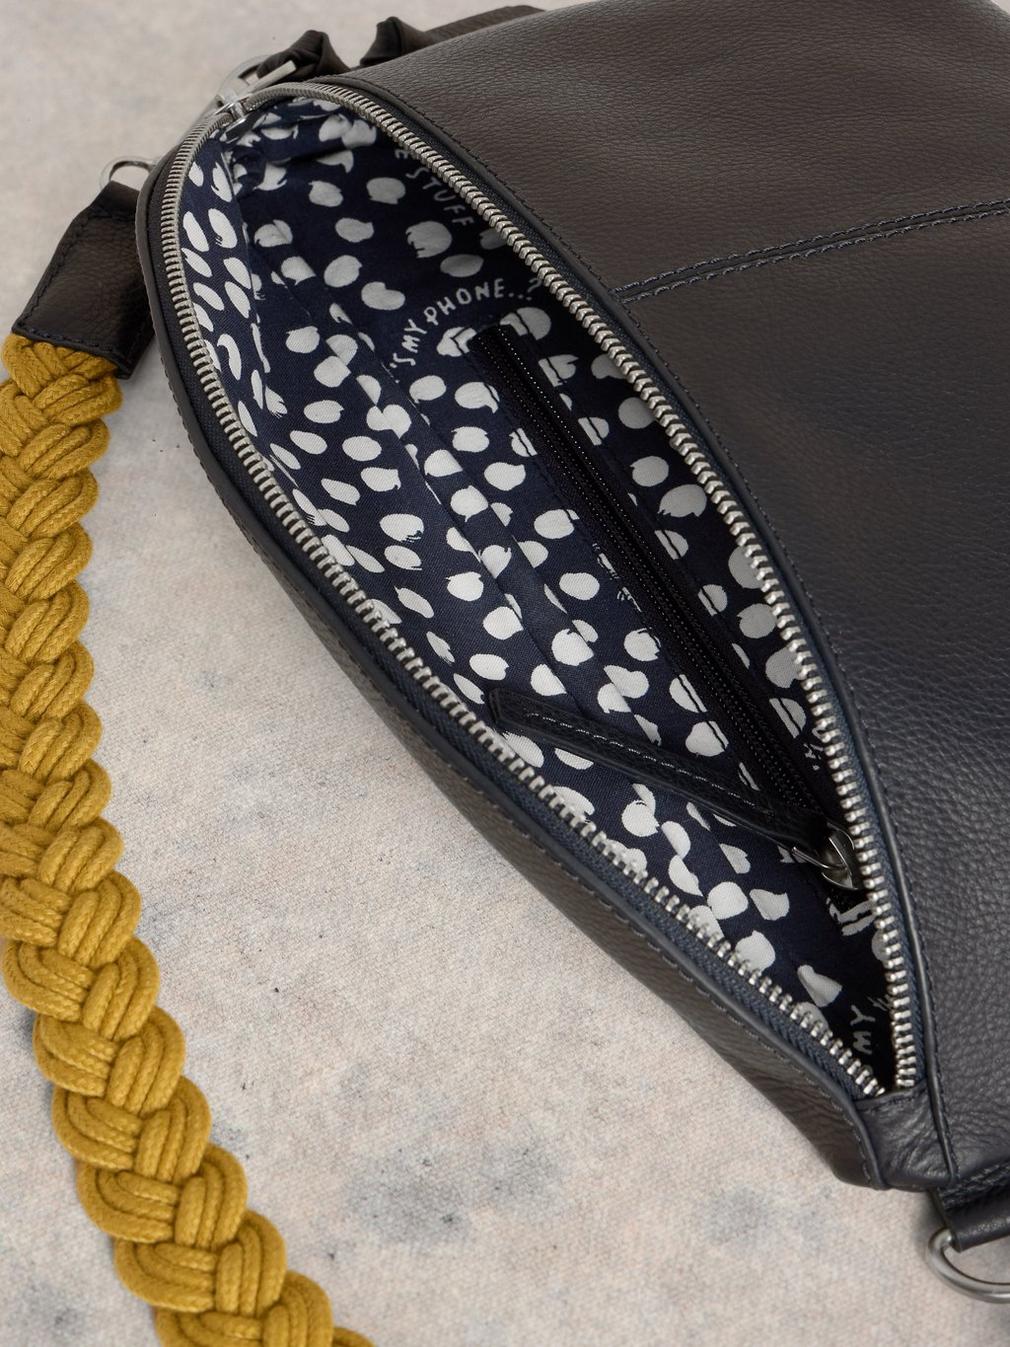 Sebby Leather Sling Bag in DARK NAVY - FLAT DETAIL